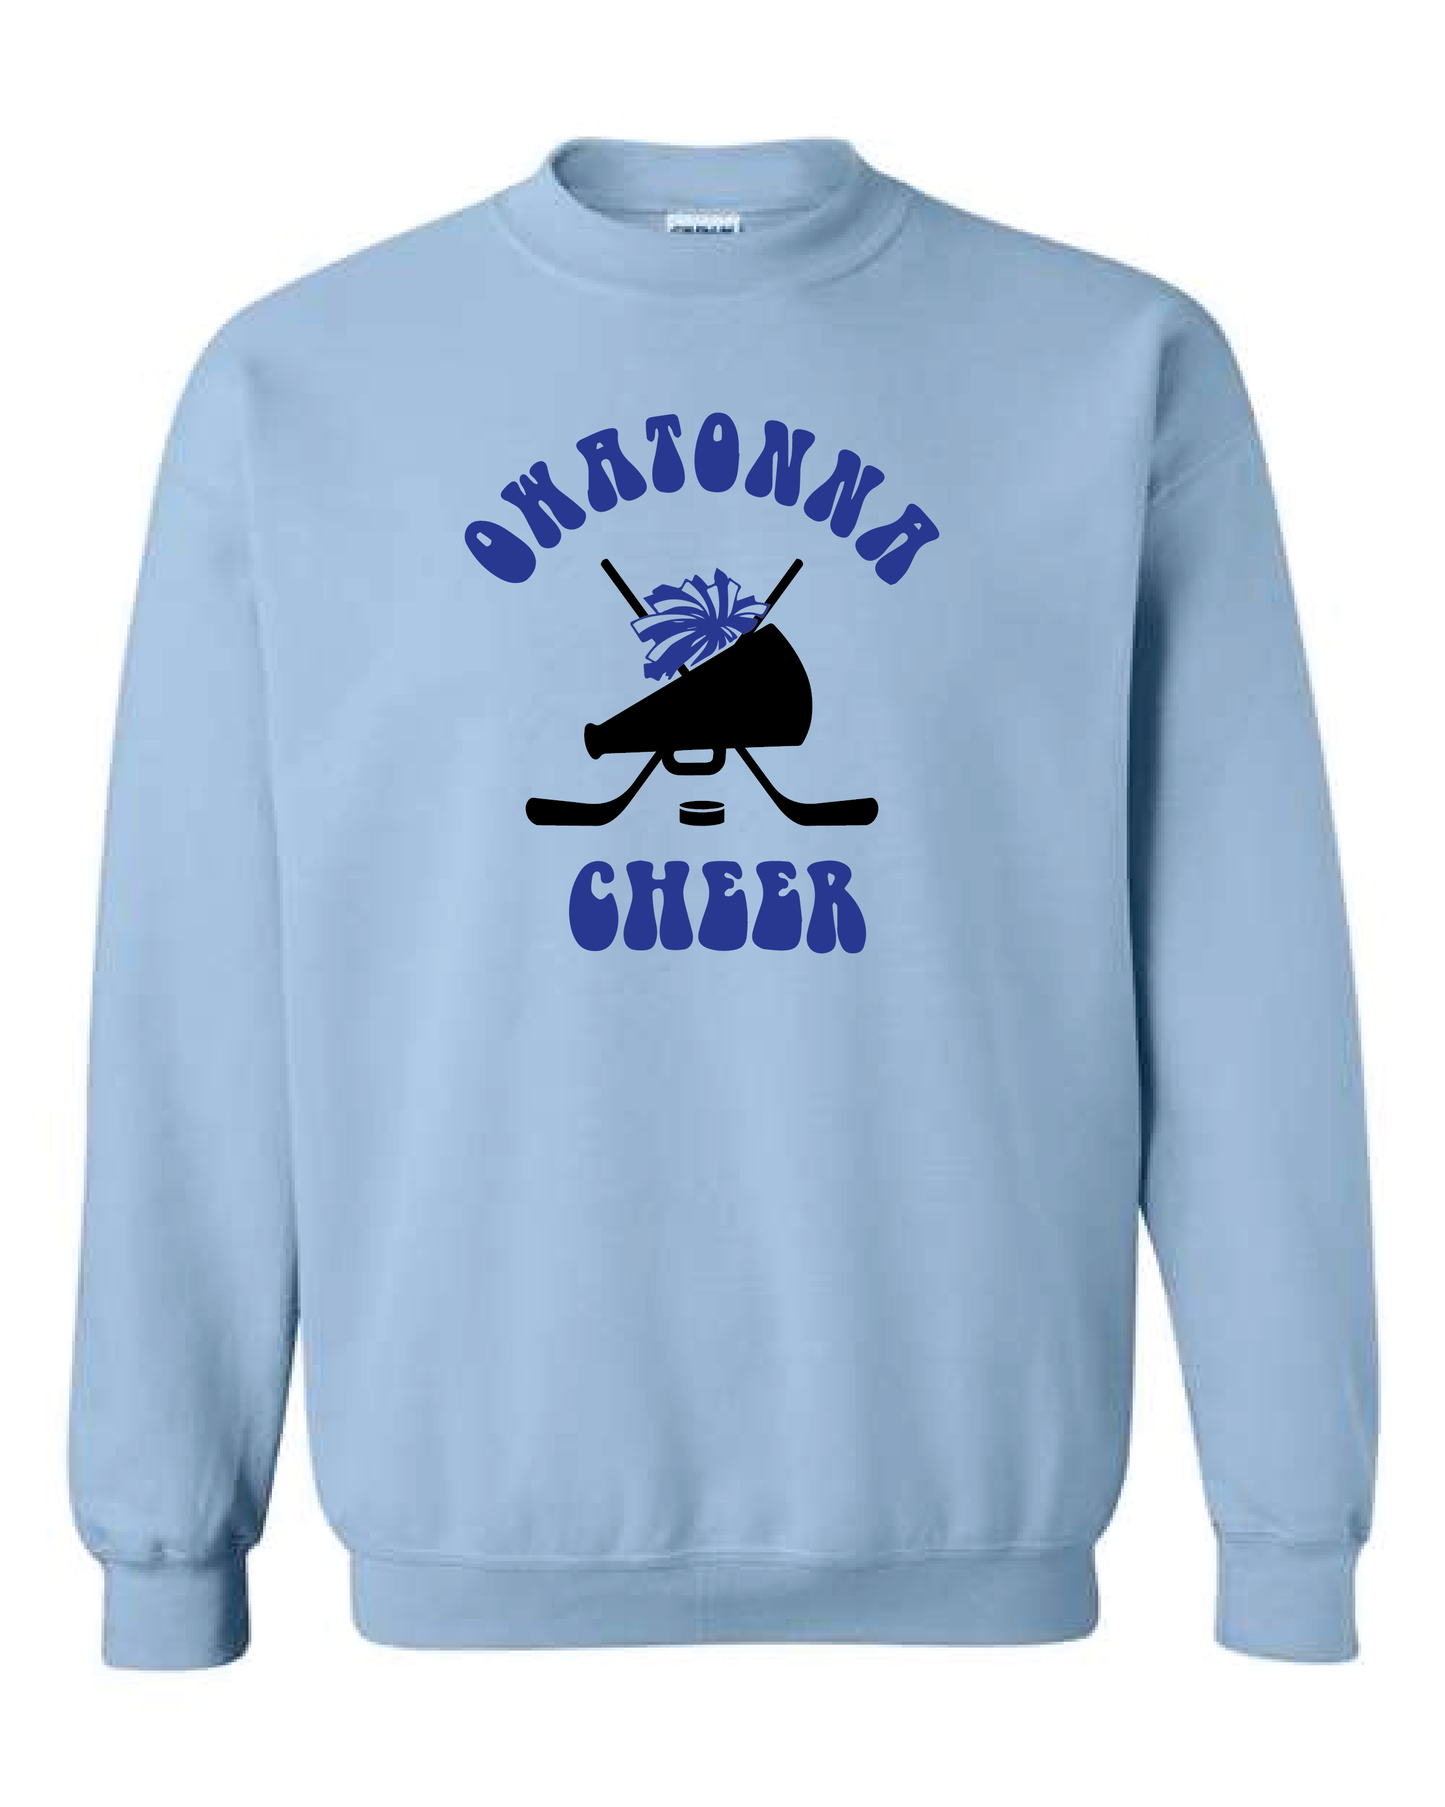 OHS Cheer Hockey Sweatshirt - Multiple Colors